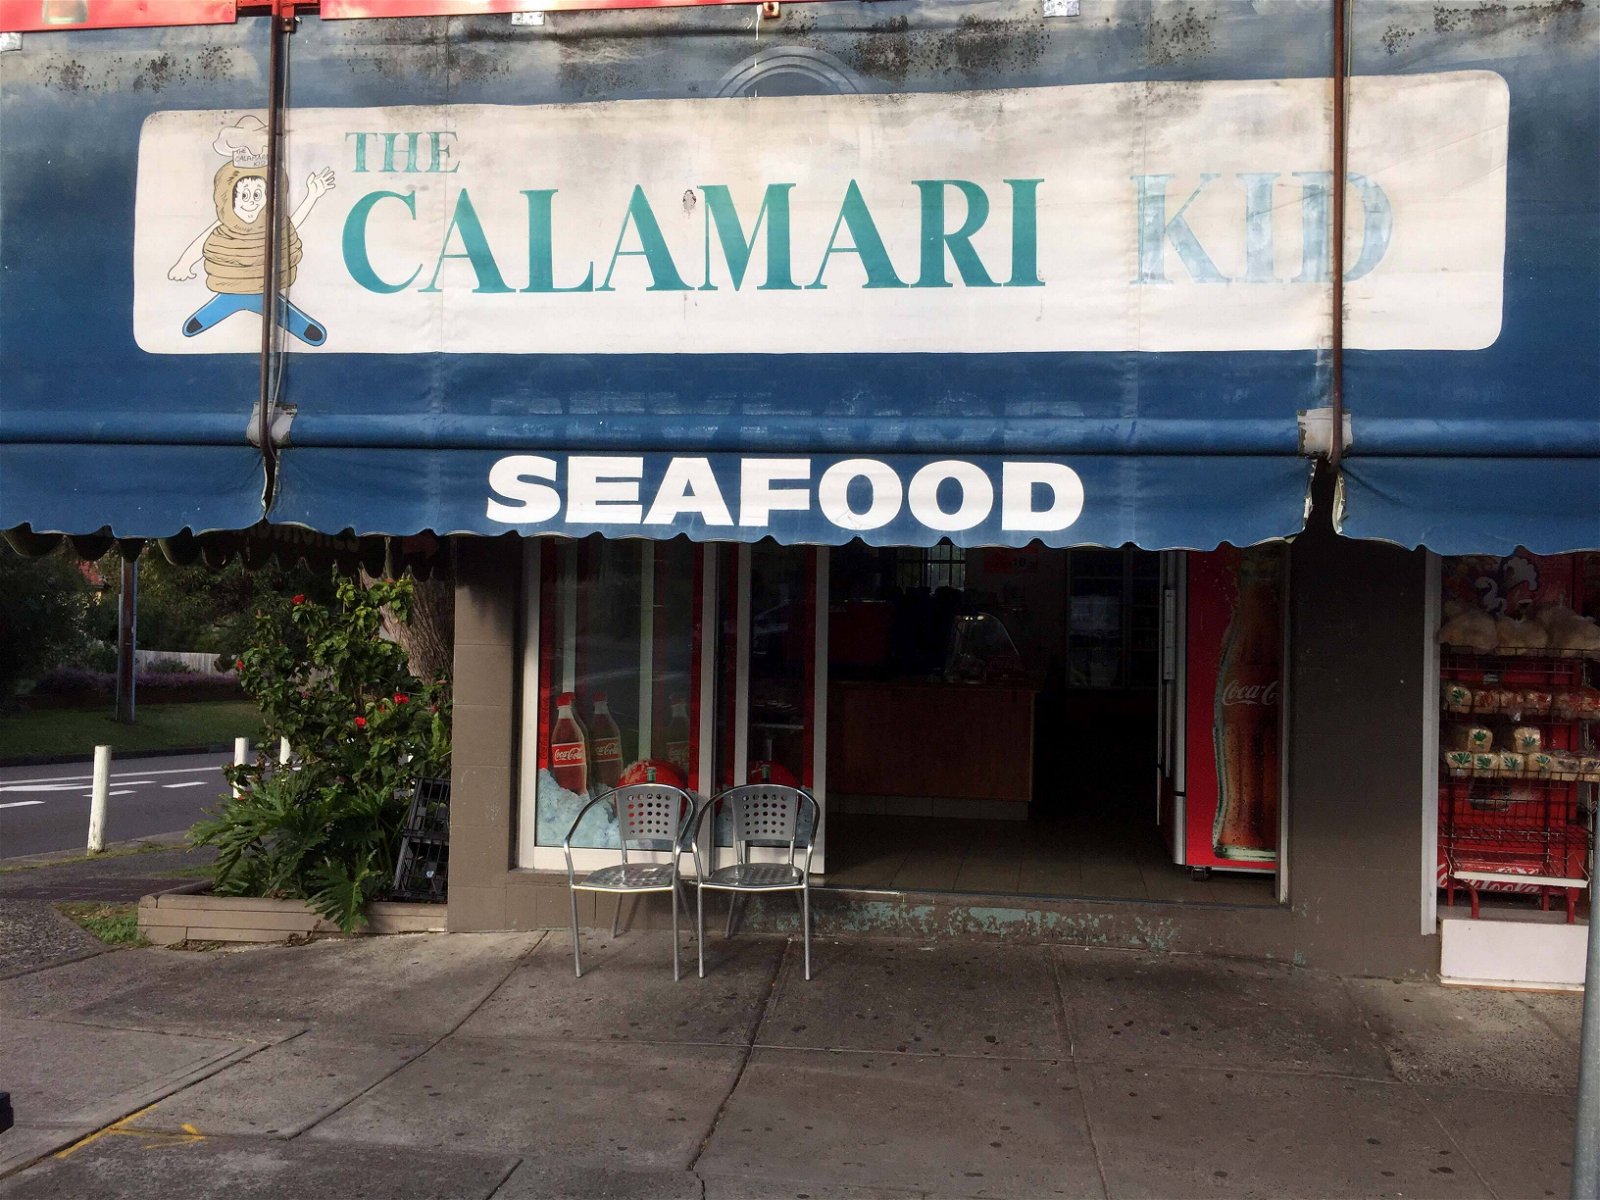 The Calamari Ring Takeaway